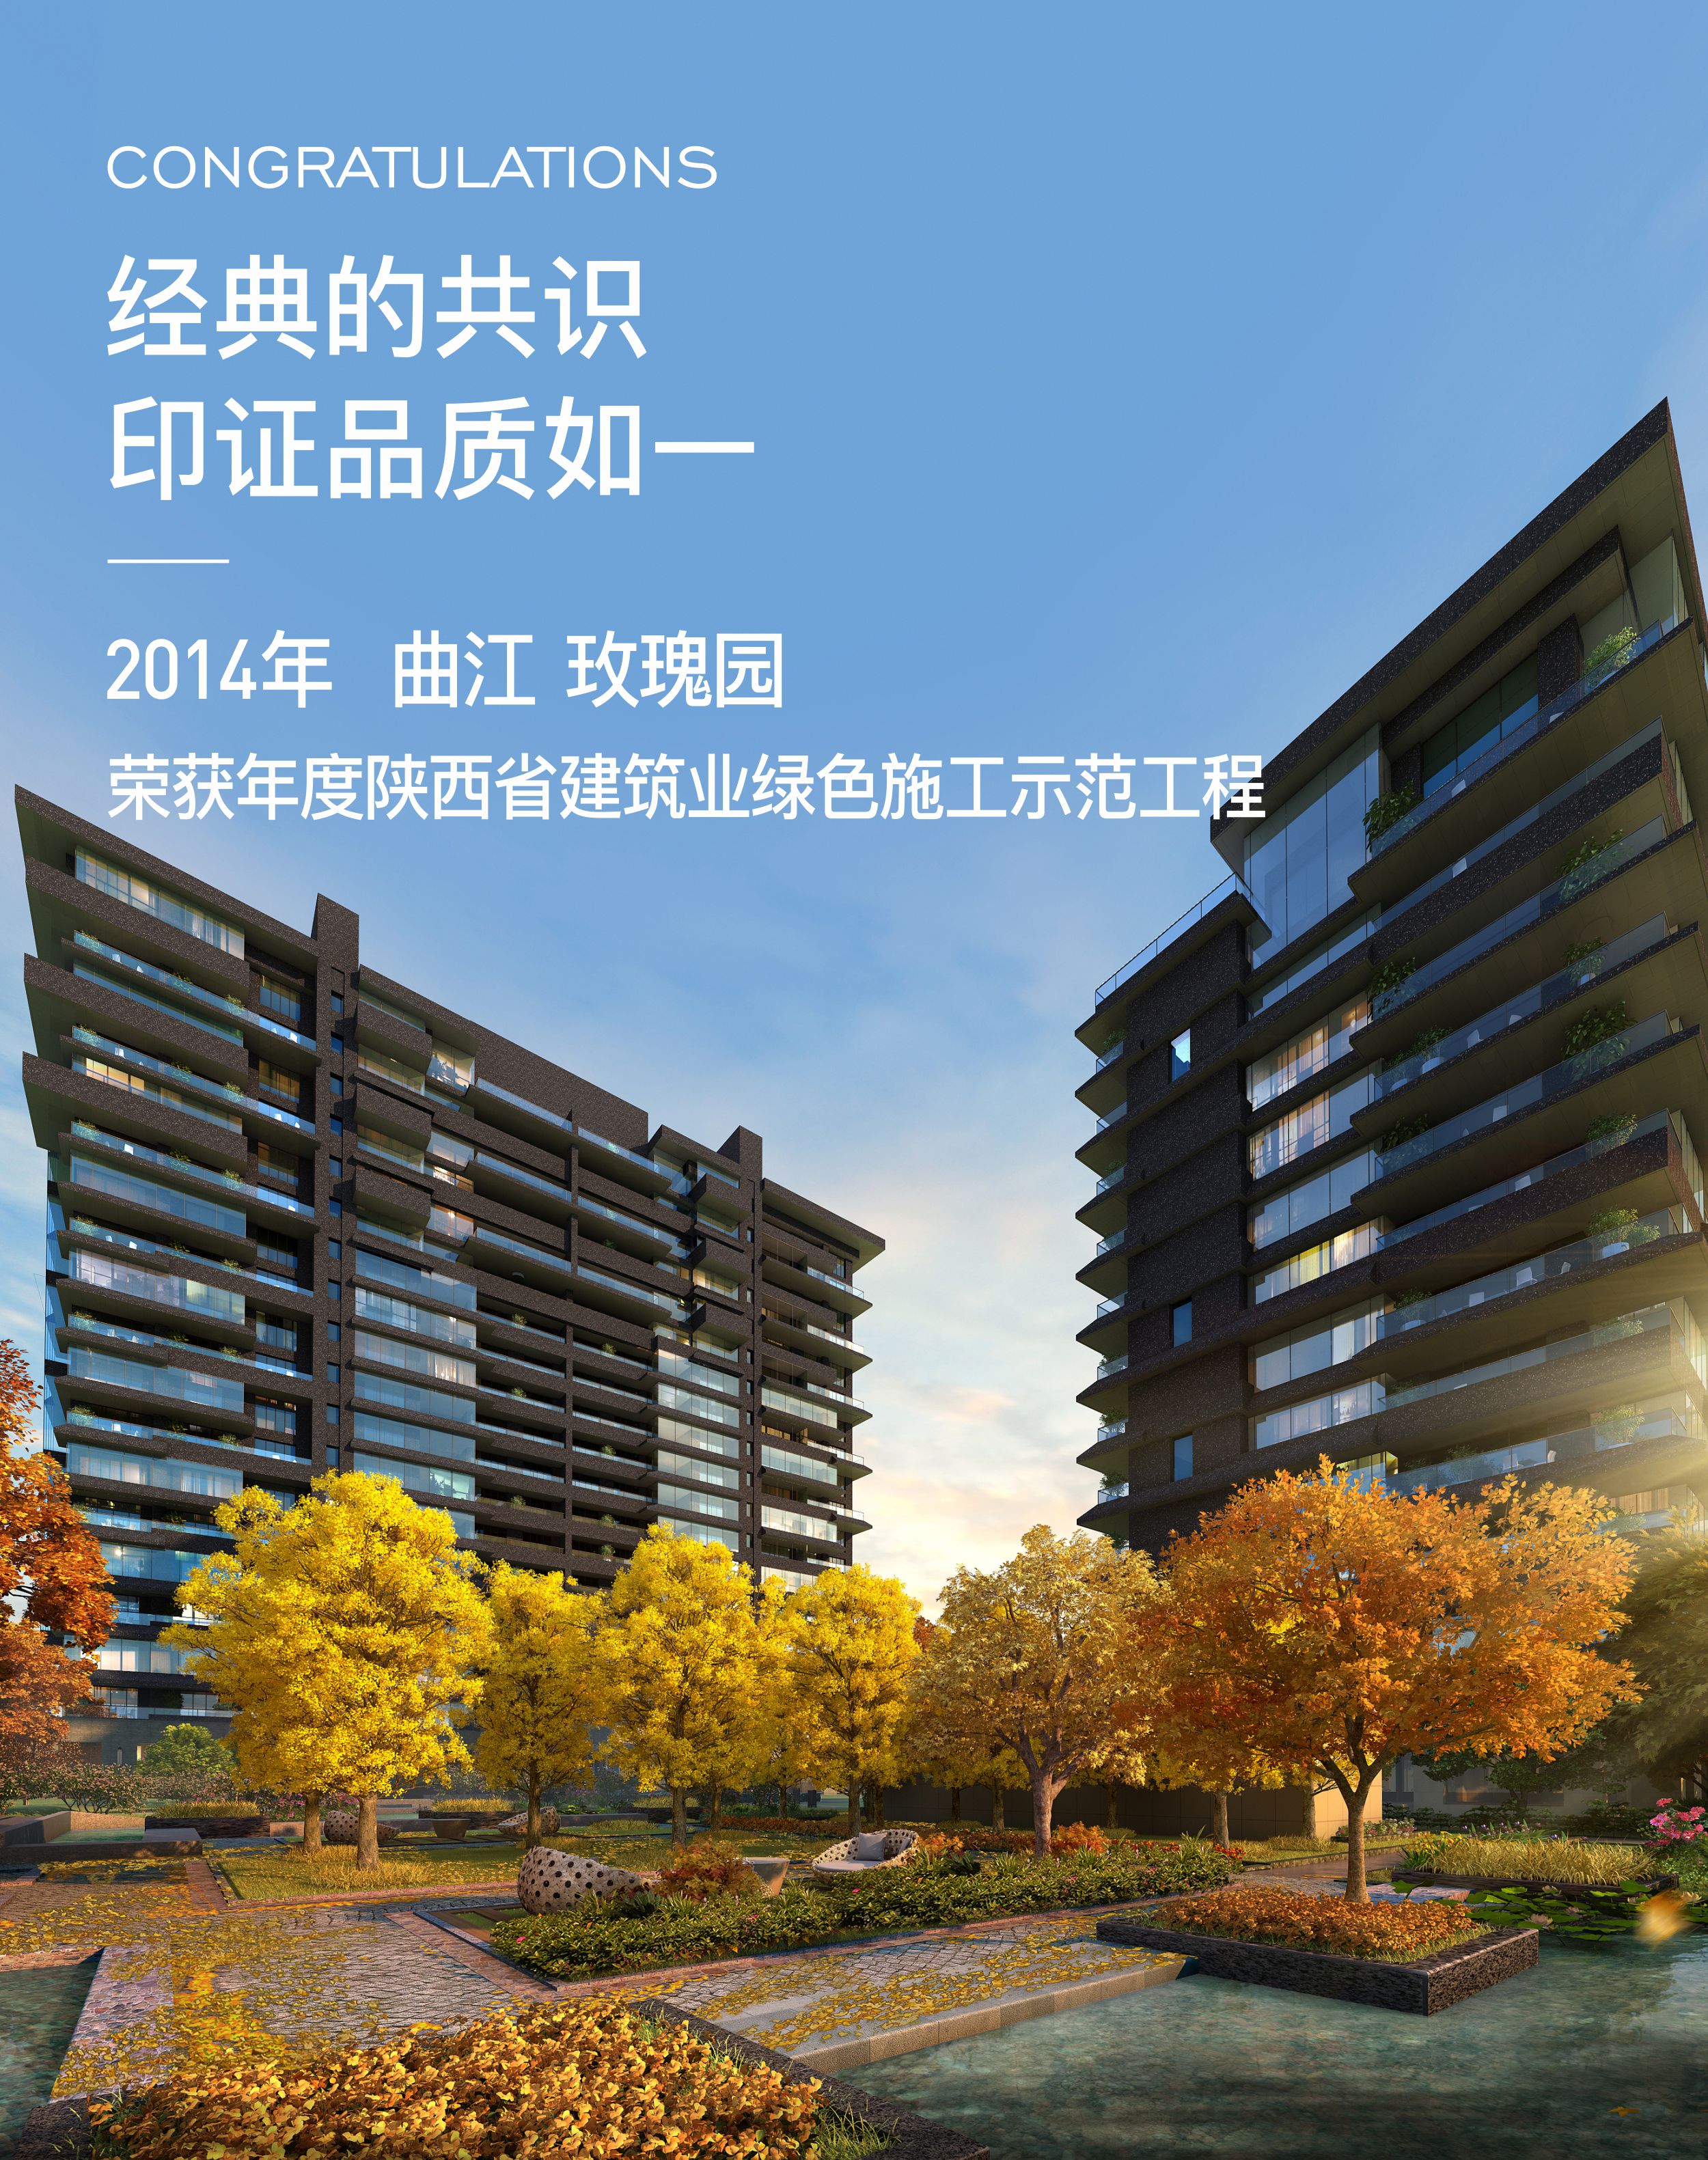 2014年 曲江 · 玫瑰园荣获年度陕西省建筑绿色施工示范工程